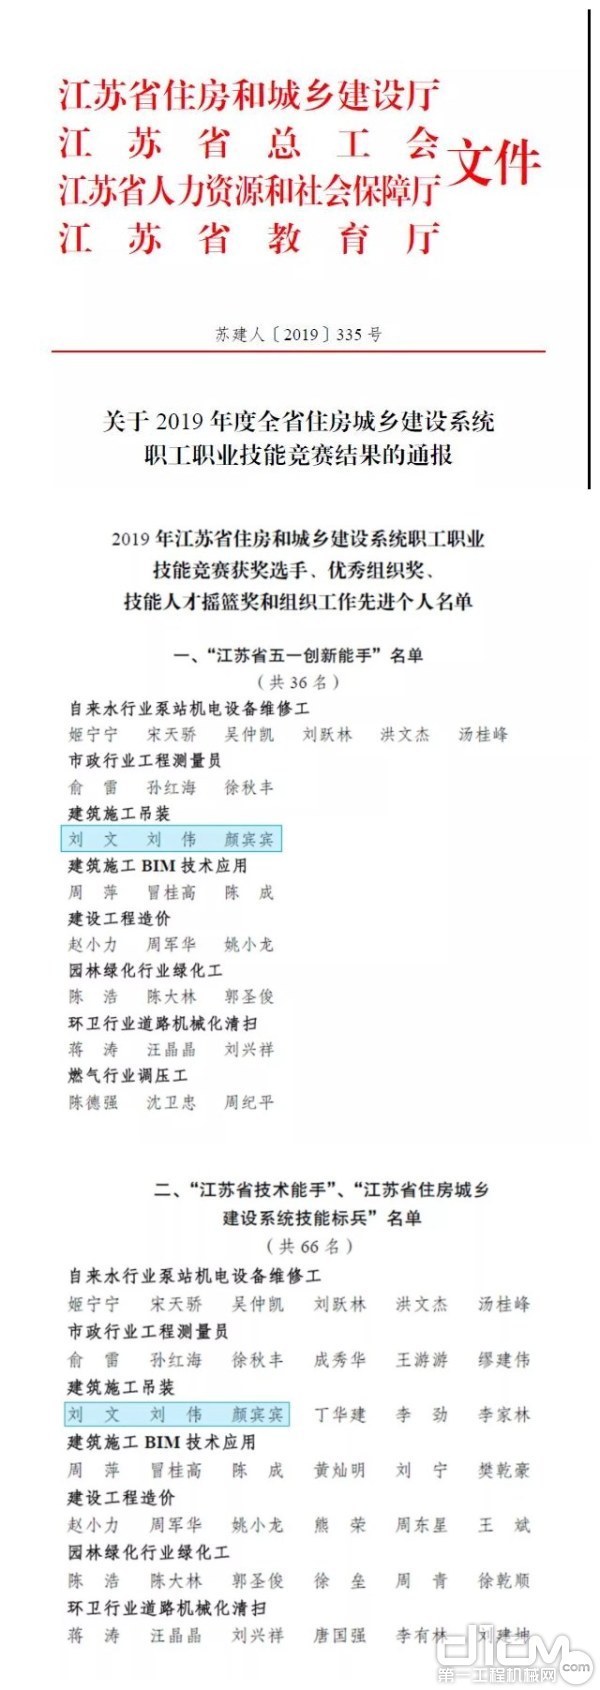 徐工塔机参赛选手 包揽省赛前三名 刘文、刘伟、颜宾宾